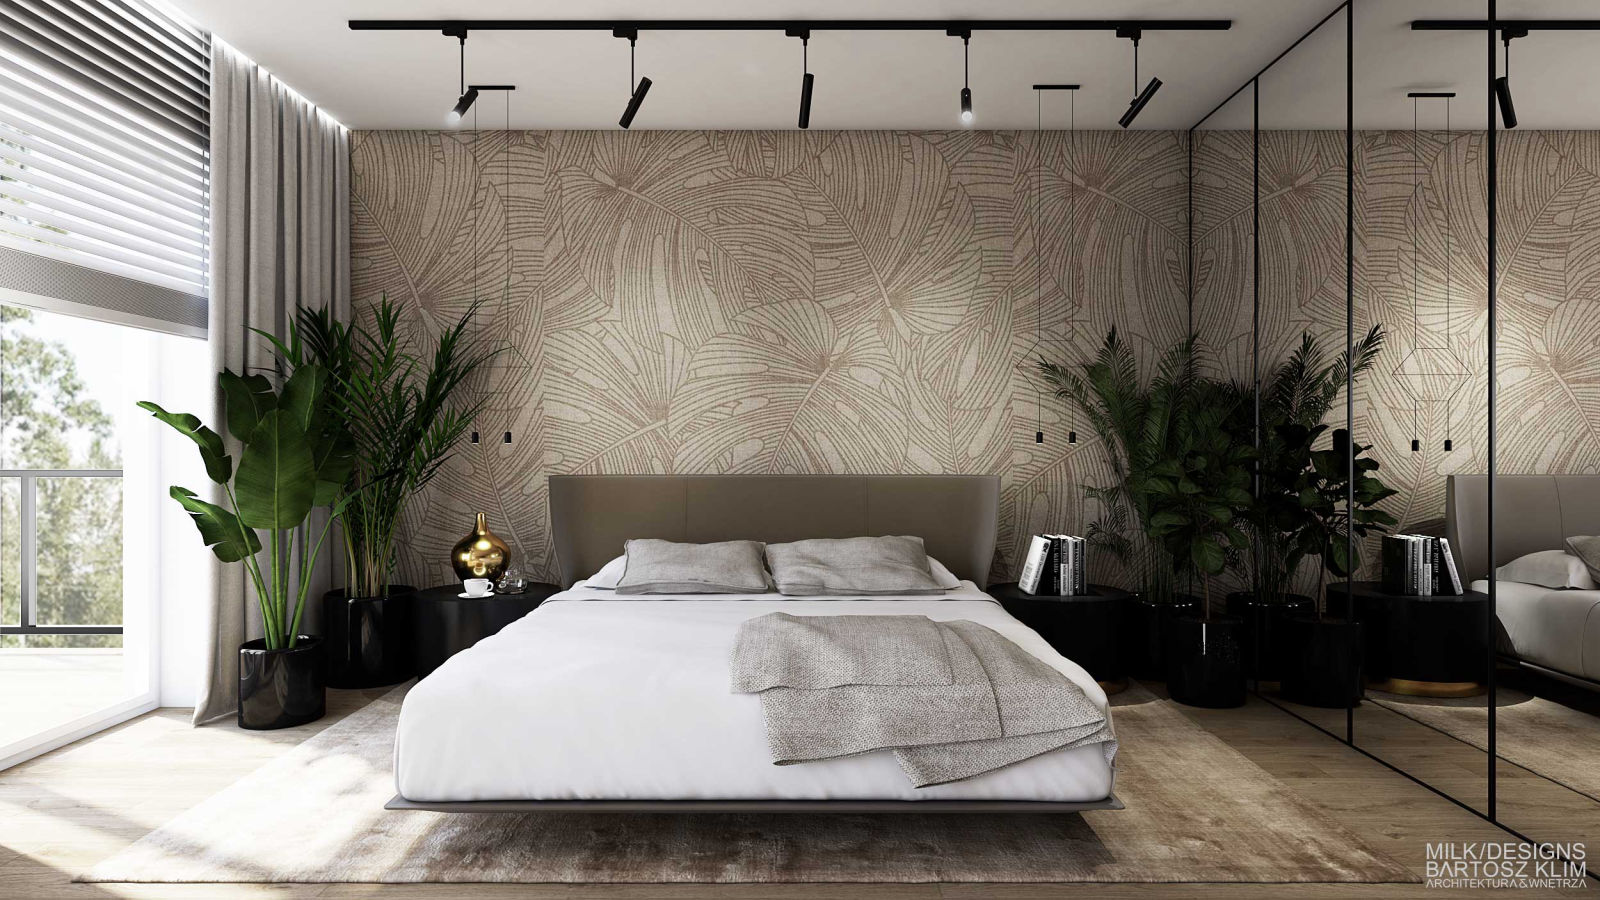 projekt wnętrza luksusowego apartamentu - sypialnia z bezowym tapicerowanym łózkiem i lustrzaną szafą - MILK DESIGNS PROJEKTOWANIE WNĘTRZ